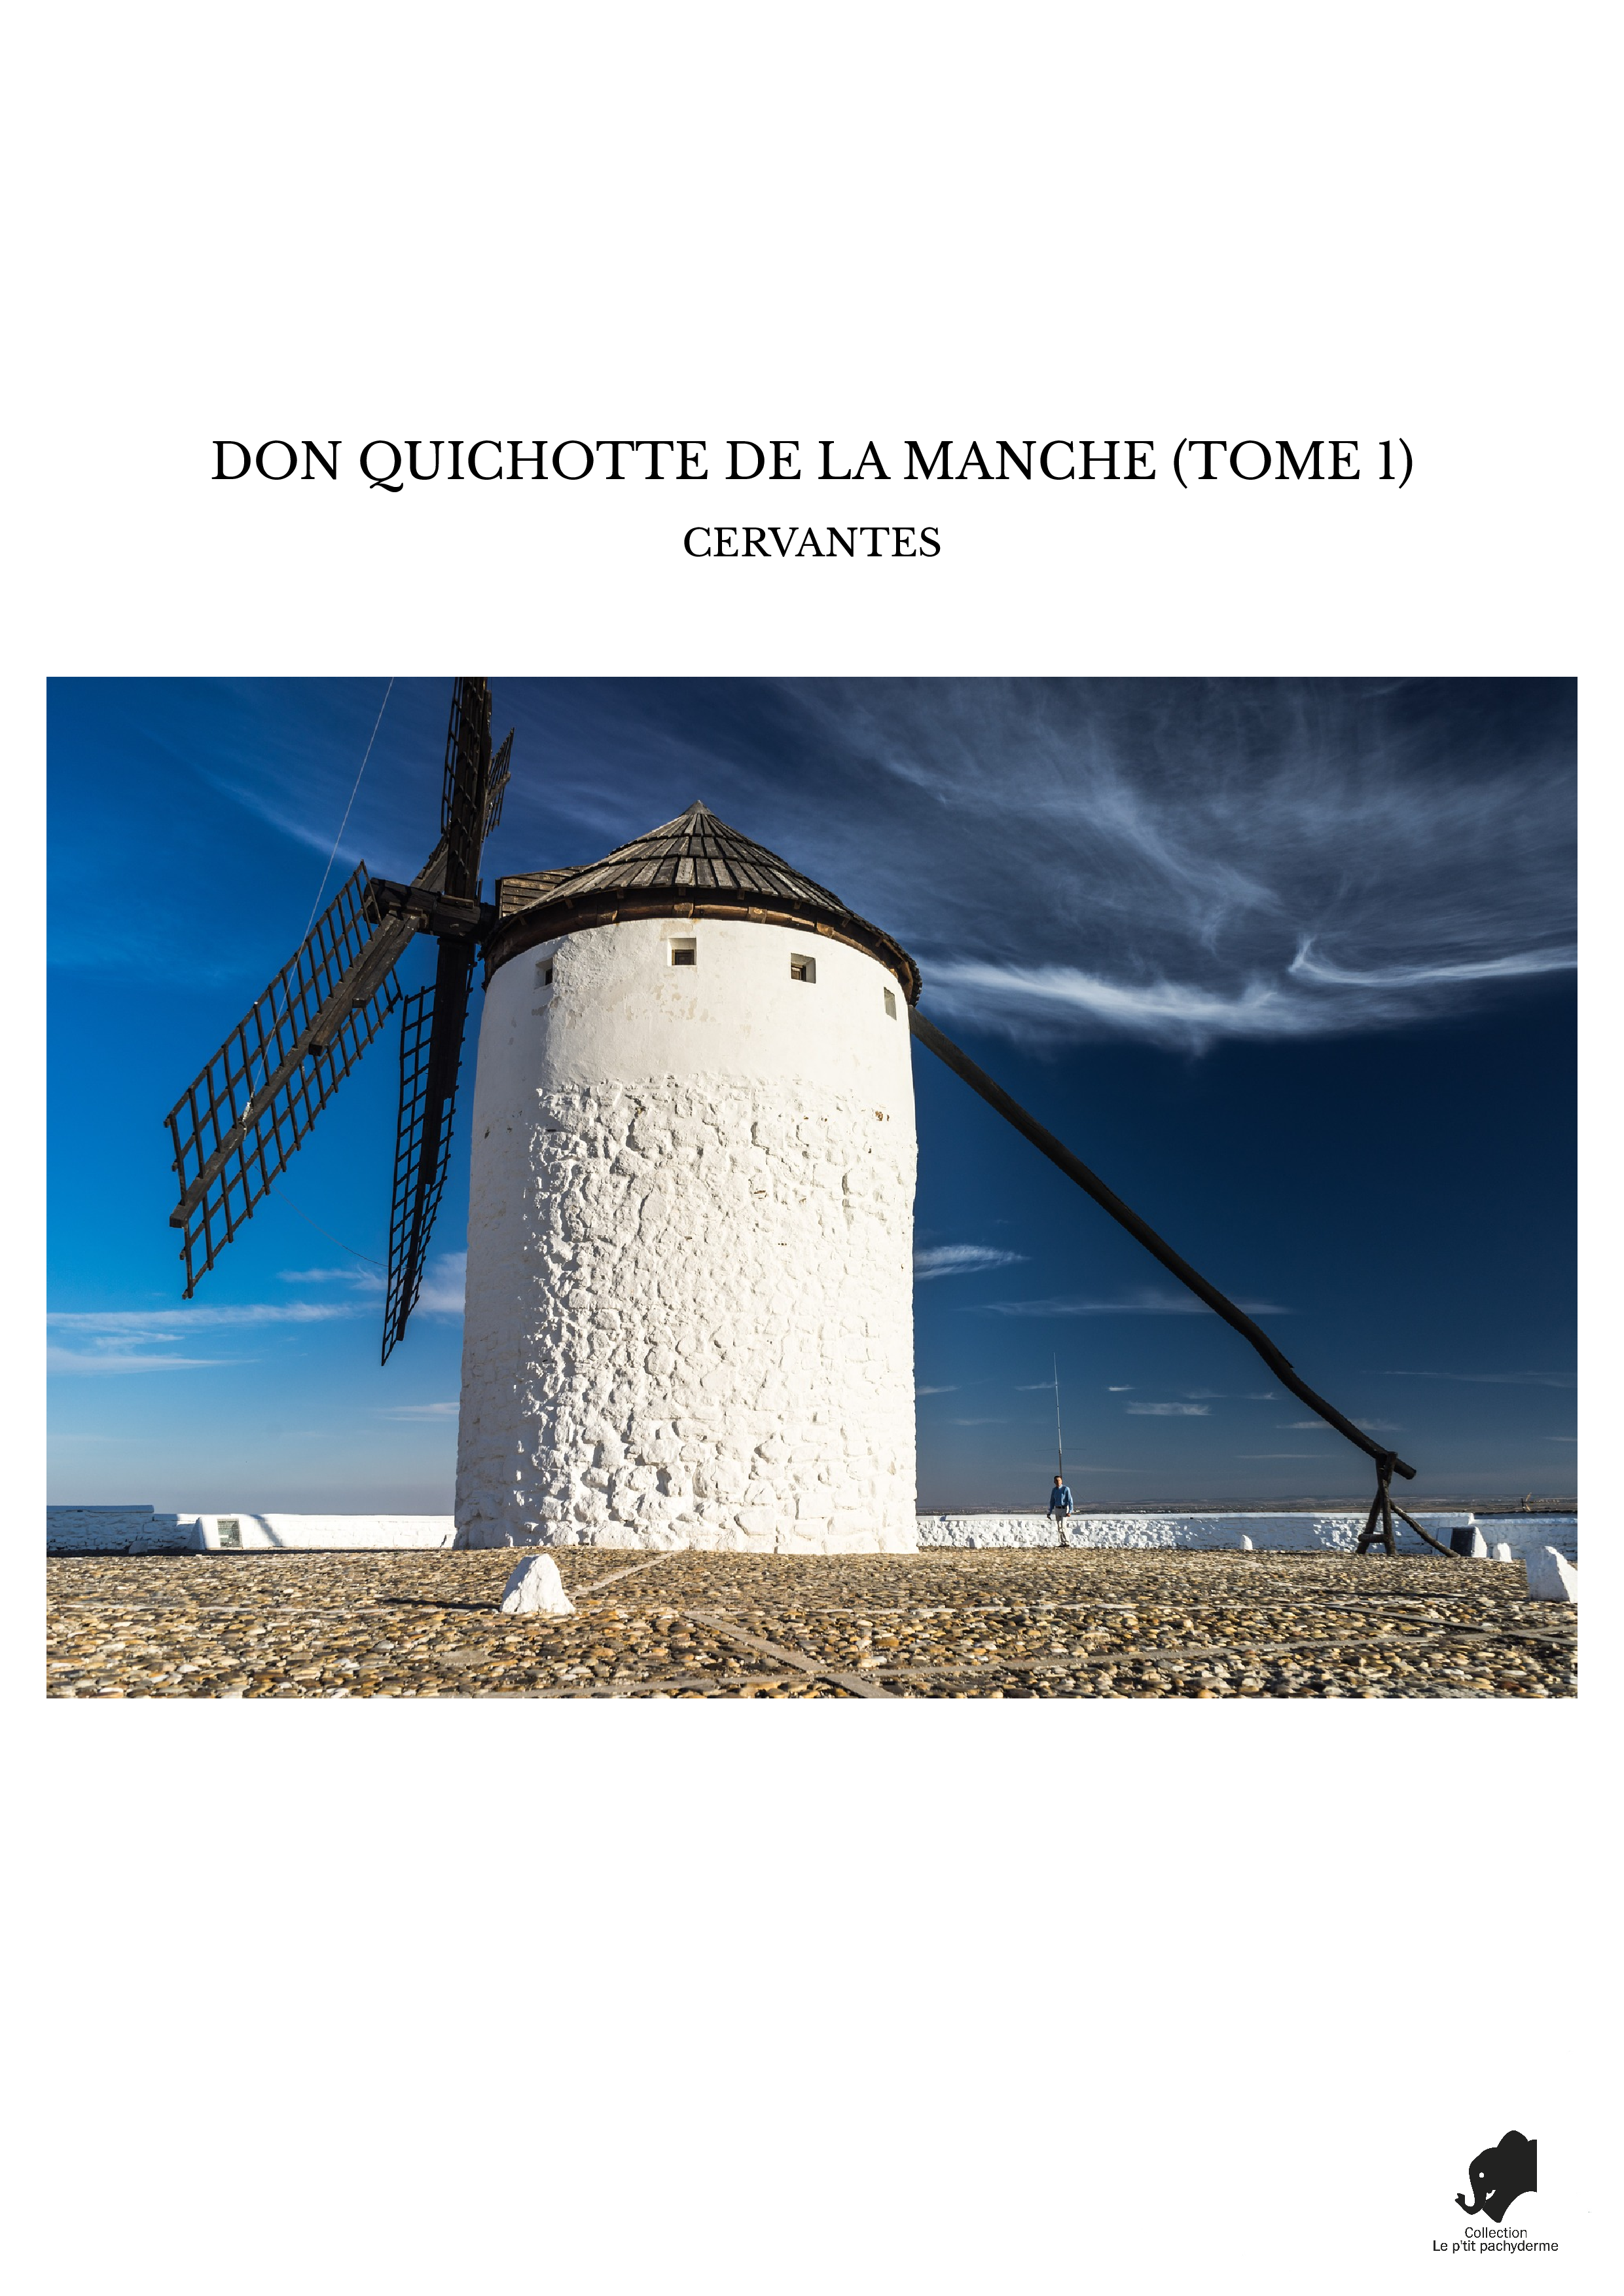 DON QUICHOTTE DE LA MANCHE (TOME 1)